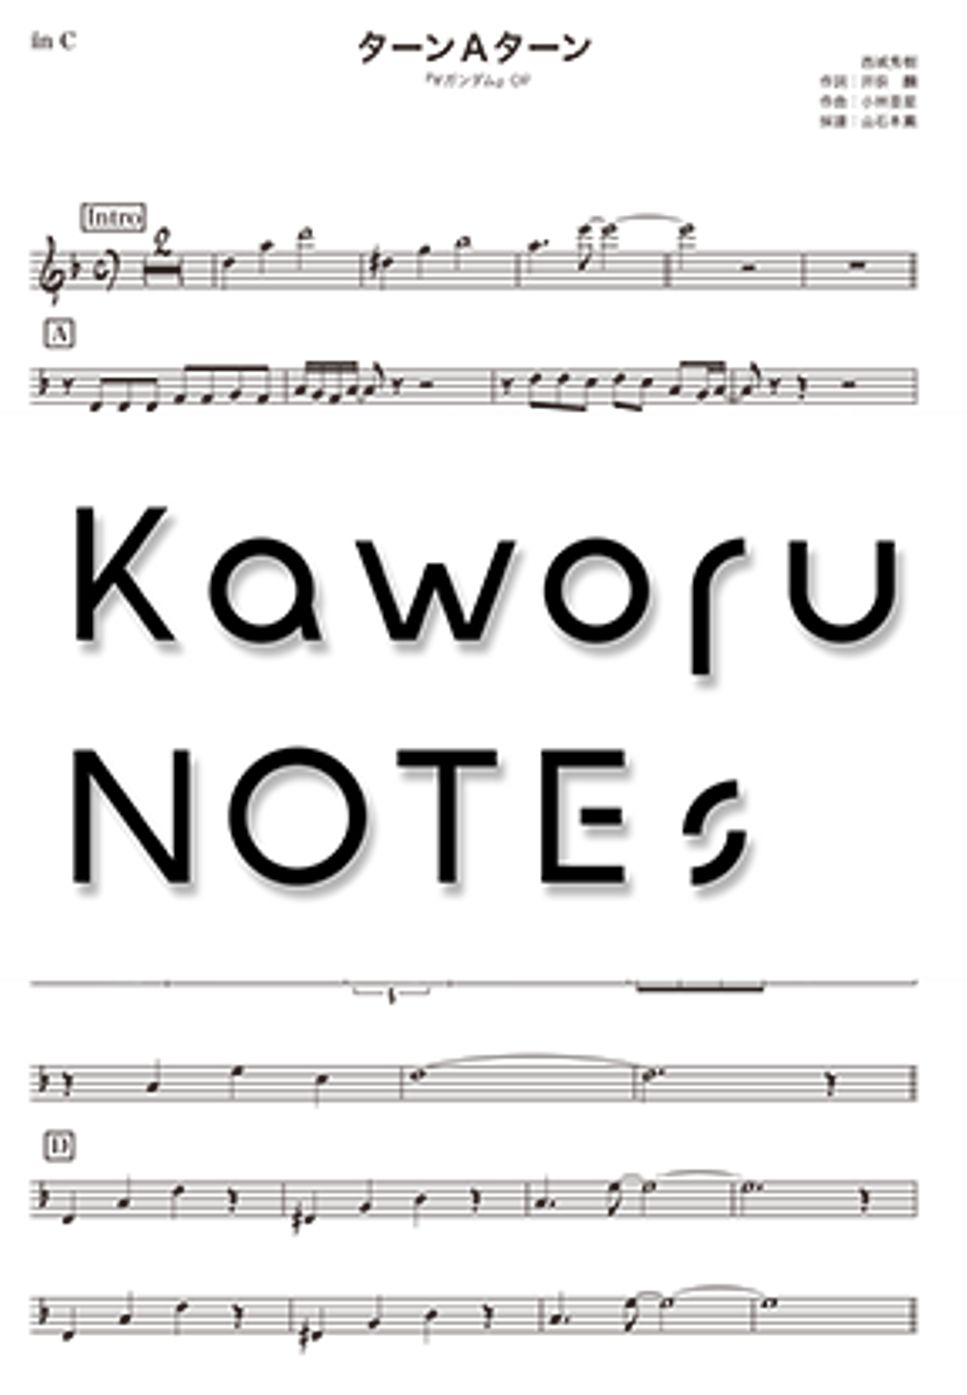 西城秀樹 - ターンＡターン（in F『∀ガンダム』） by Kaworu NOTEs